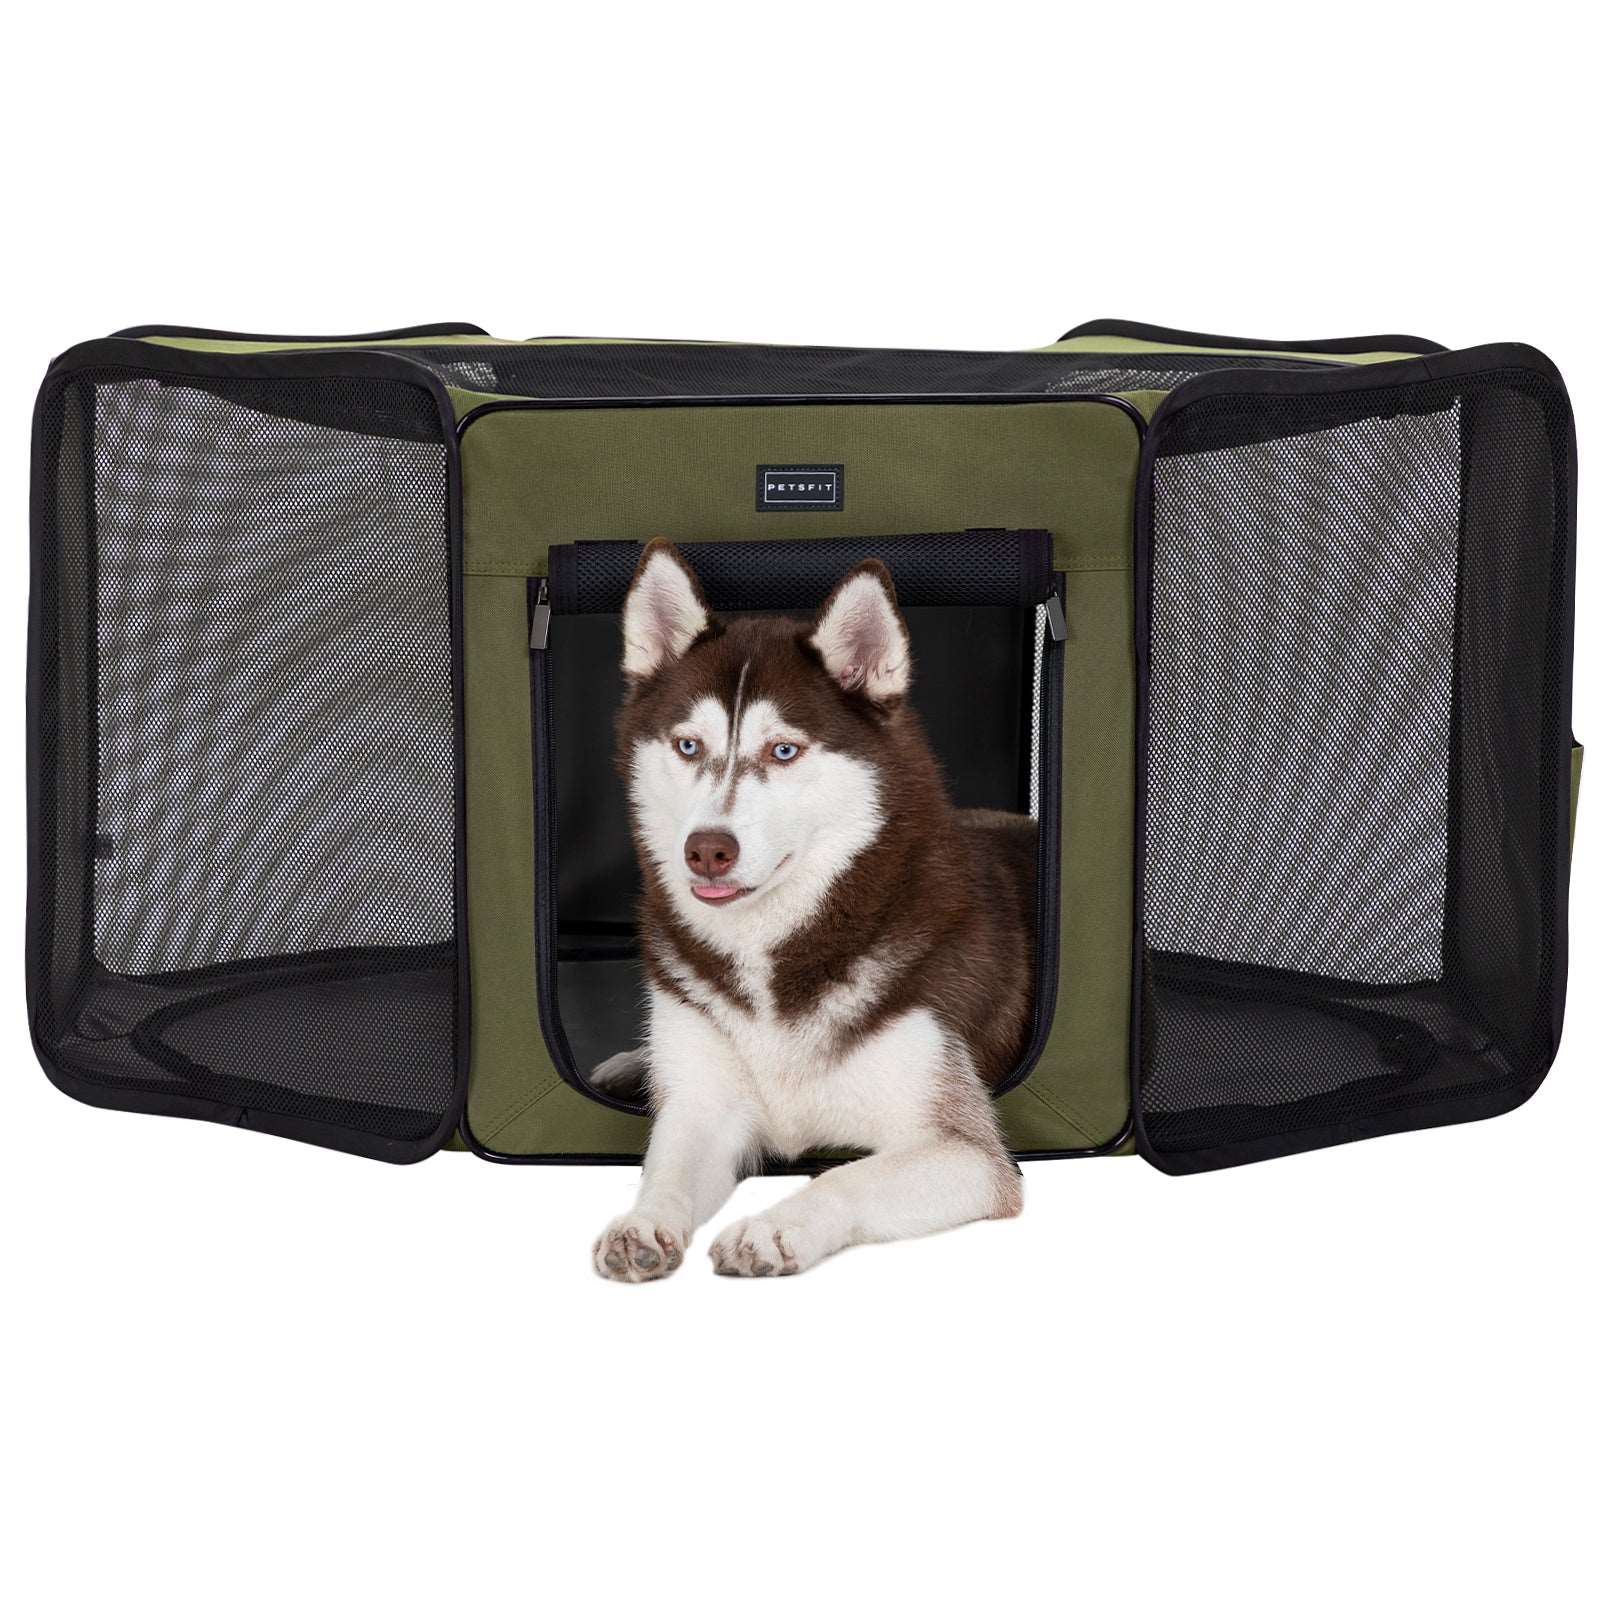 Petsfit-Portable-Dog-Playpen-Indoor-Pet-Delivery-Room-Outdoor-Pet-Tent-01